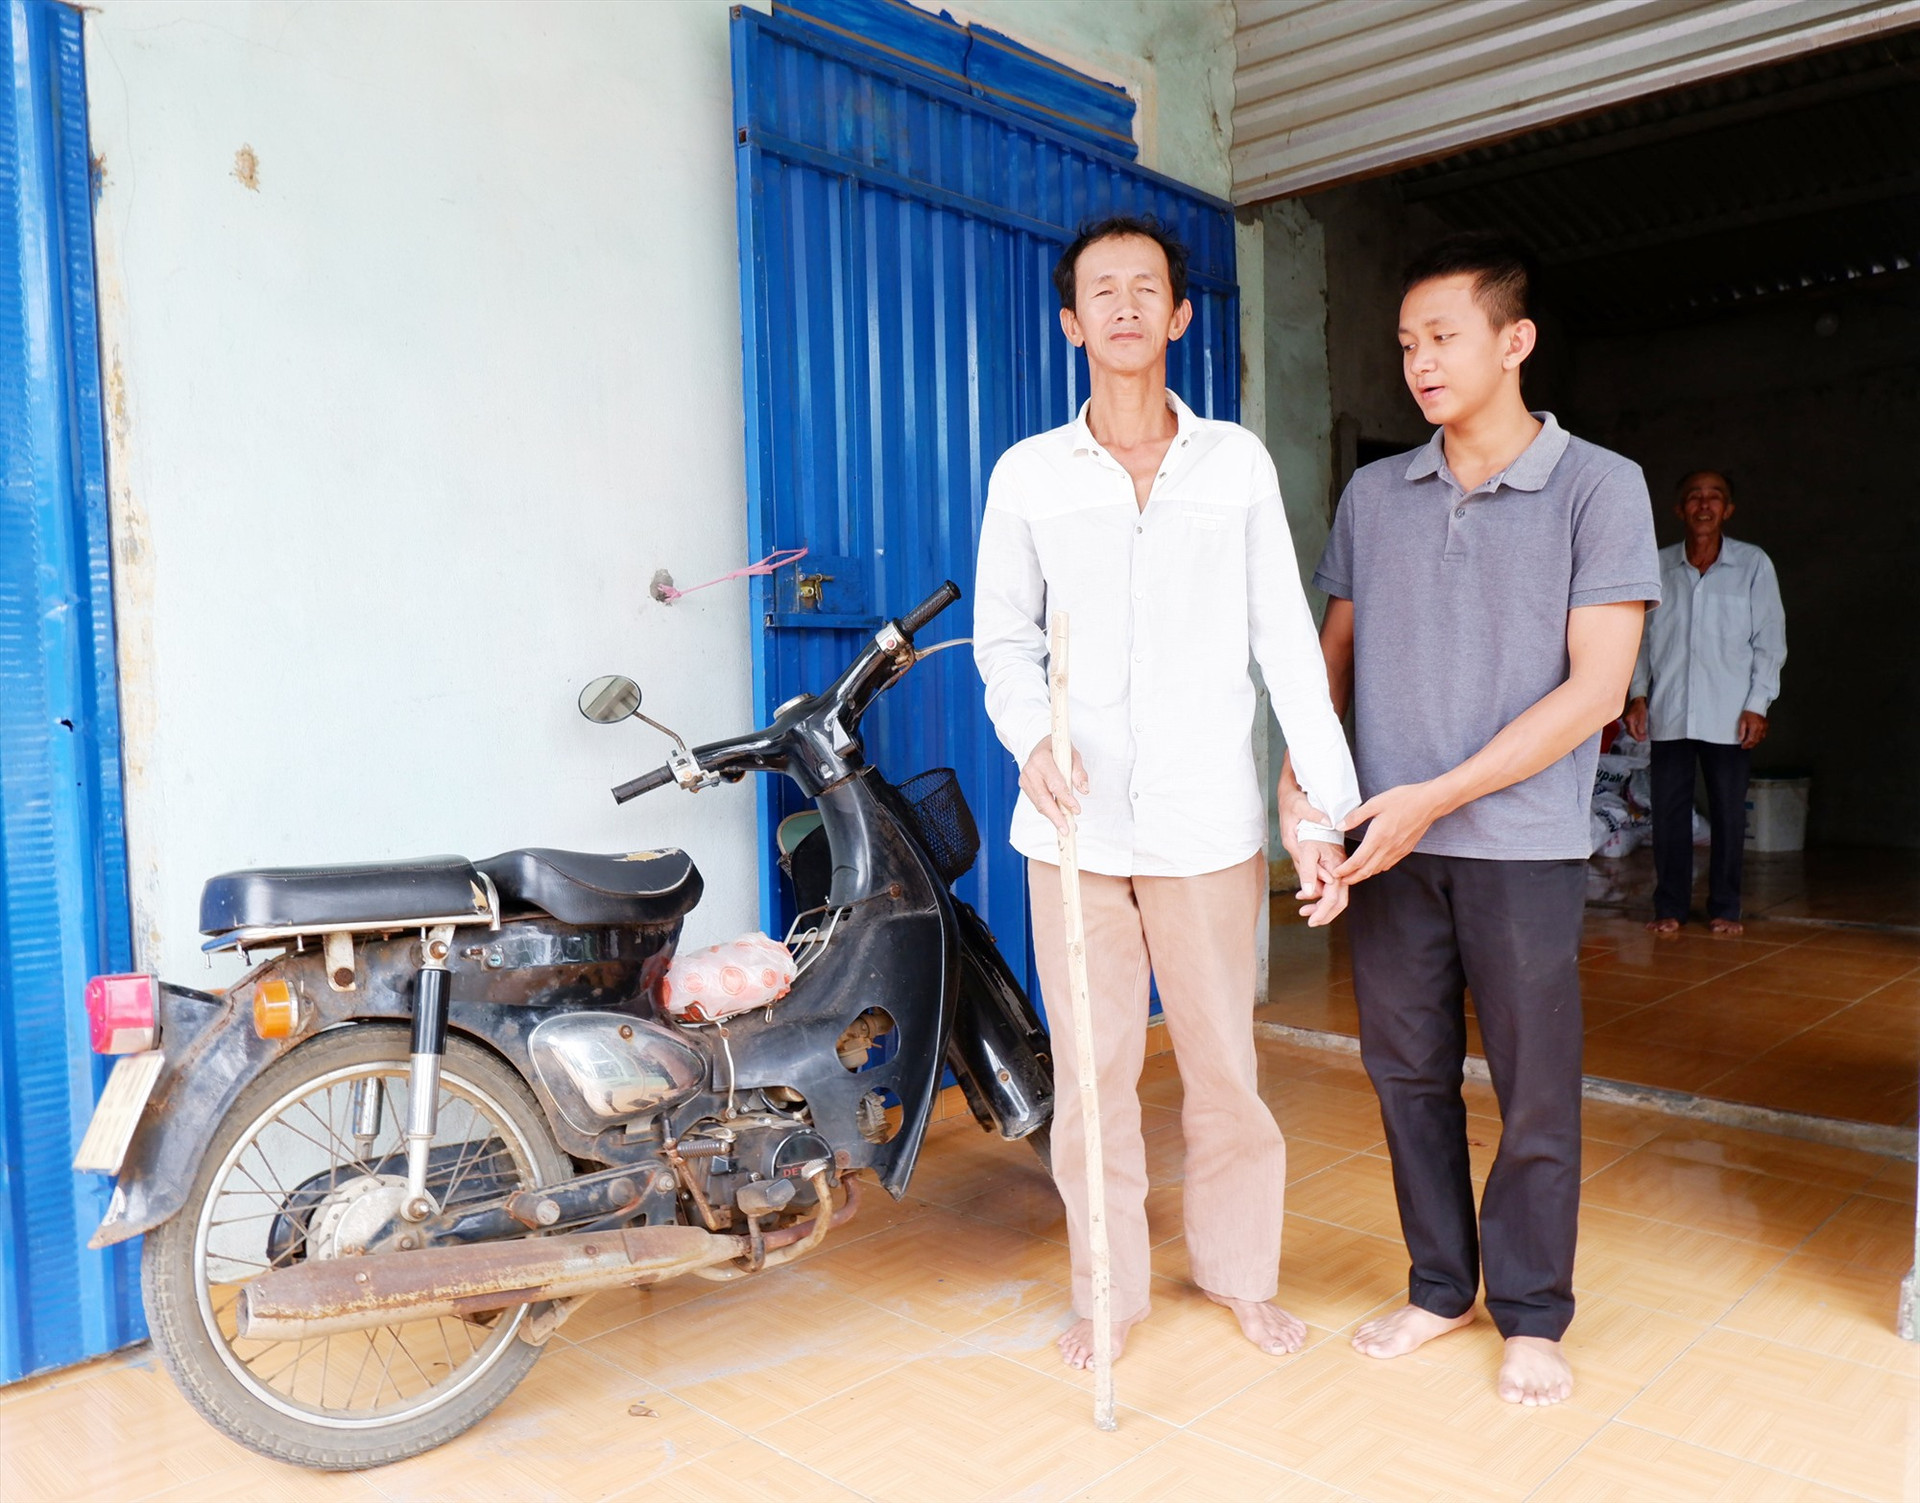 Nguyễn Ngọc Phước và cha, cùng chiếc xe máy cũ kỹ ông nội cho Phước để đi học. Ảnh: X.H